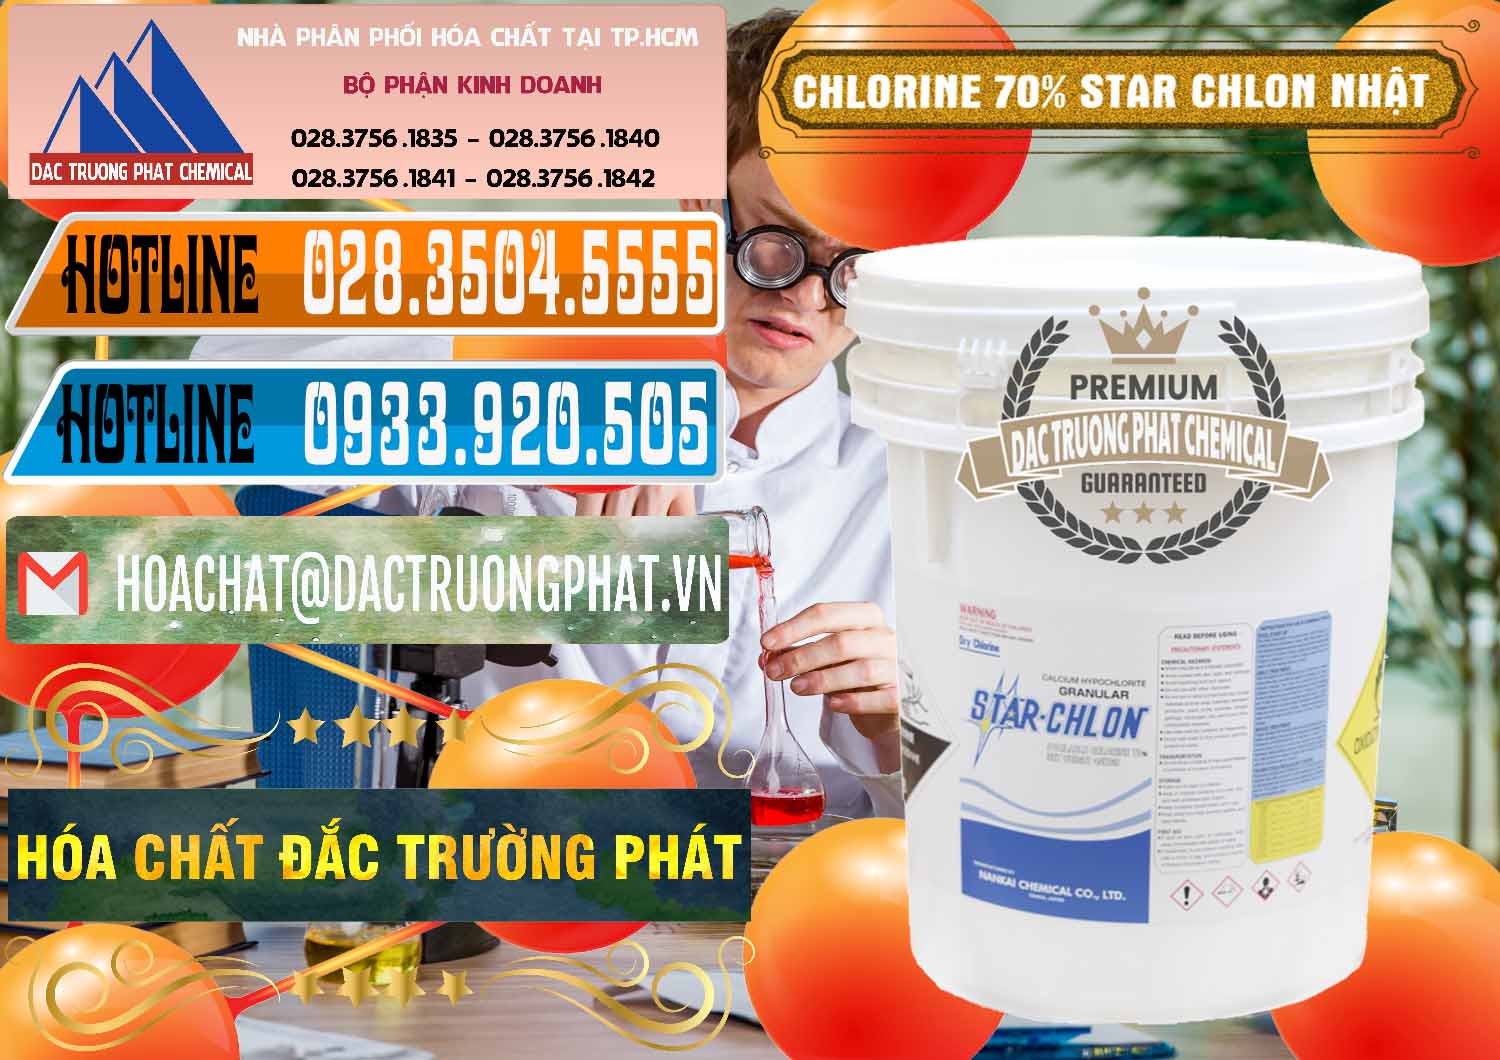 Cty chuyên cung ứng & bán Clorin – Chlorine 70% Star Chlon Nhật Bản Japan - 0243 - Đơn vị chuyên cung cấp và kinh doanh hóa chất tại TP.HCM - stmp.net